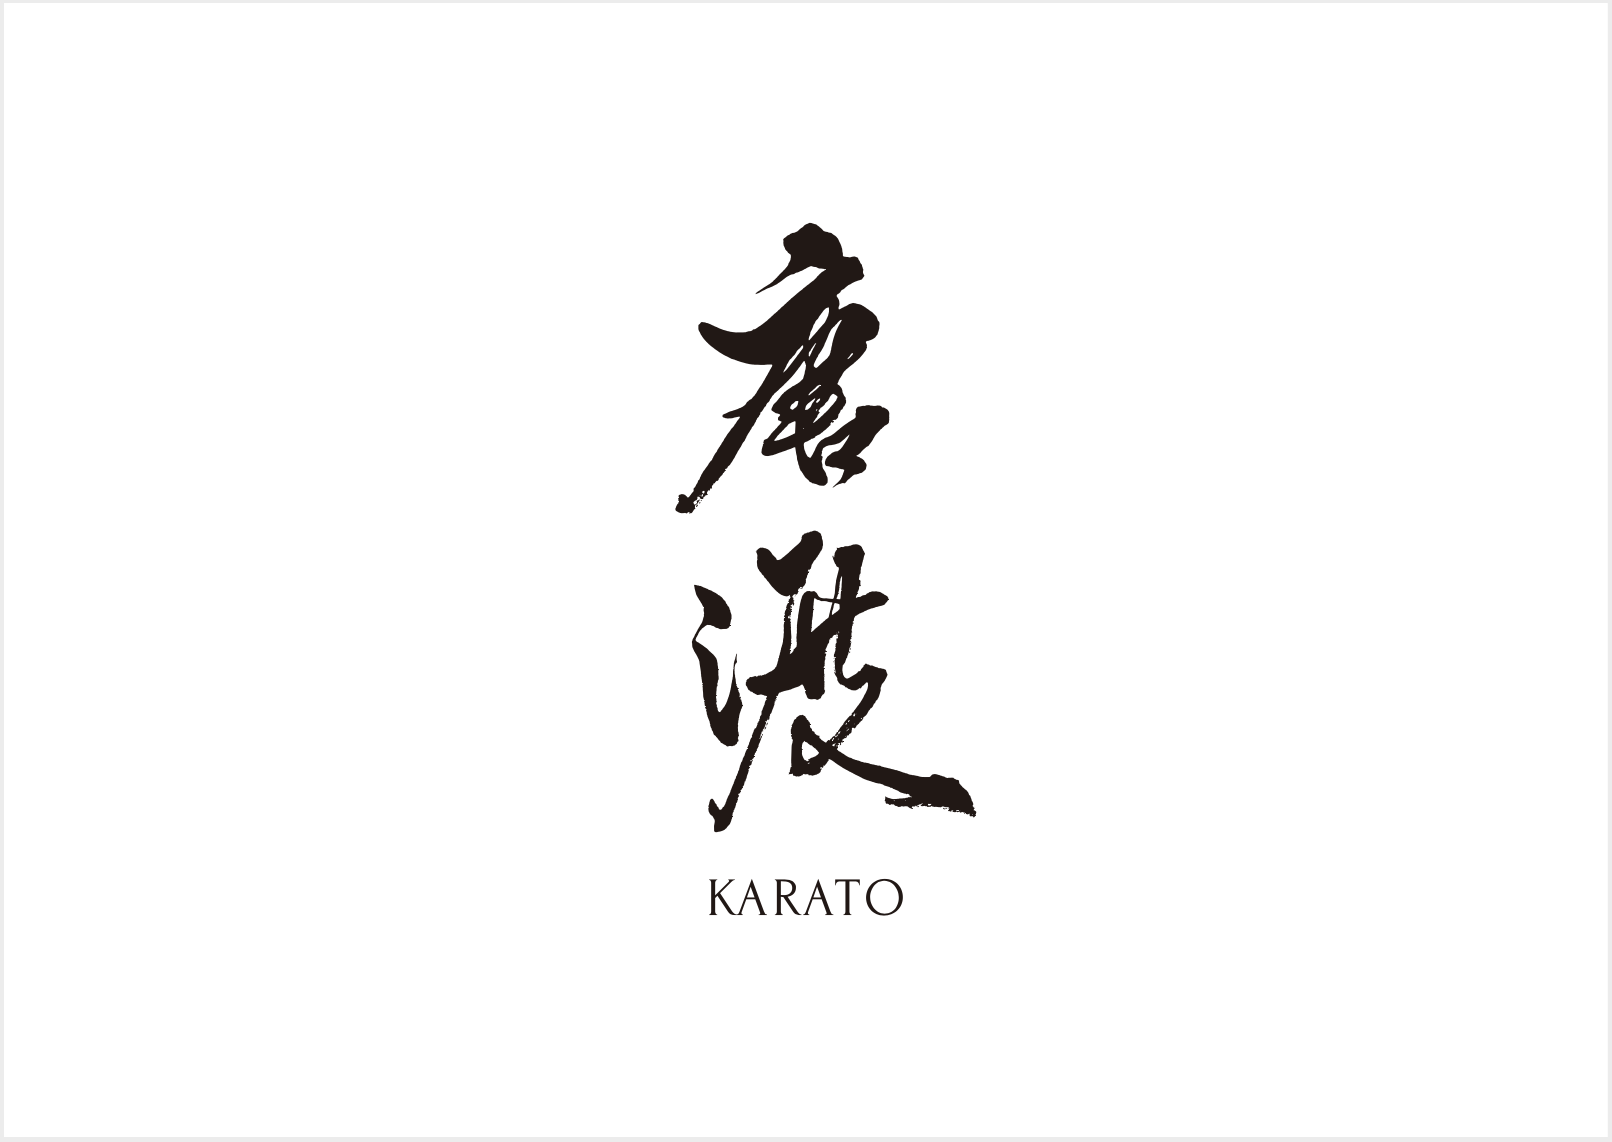 Karato  (Takeaway)'s image